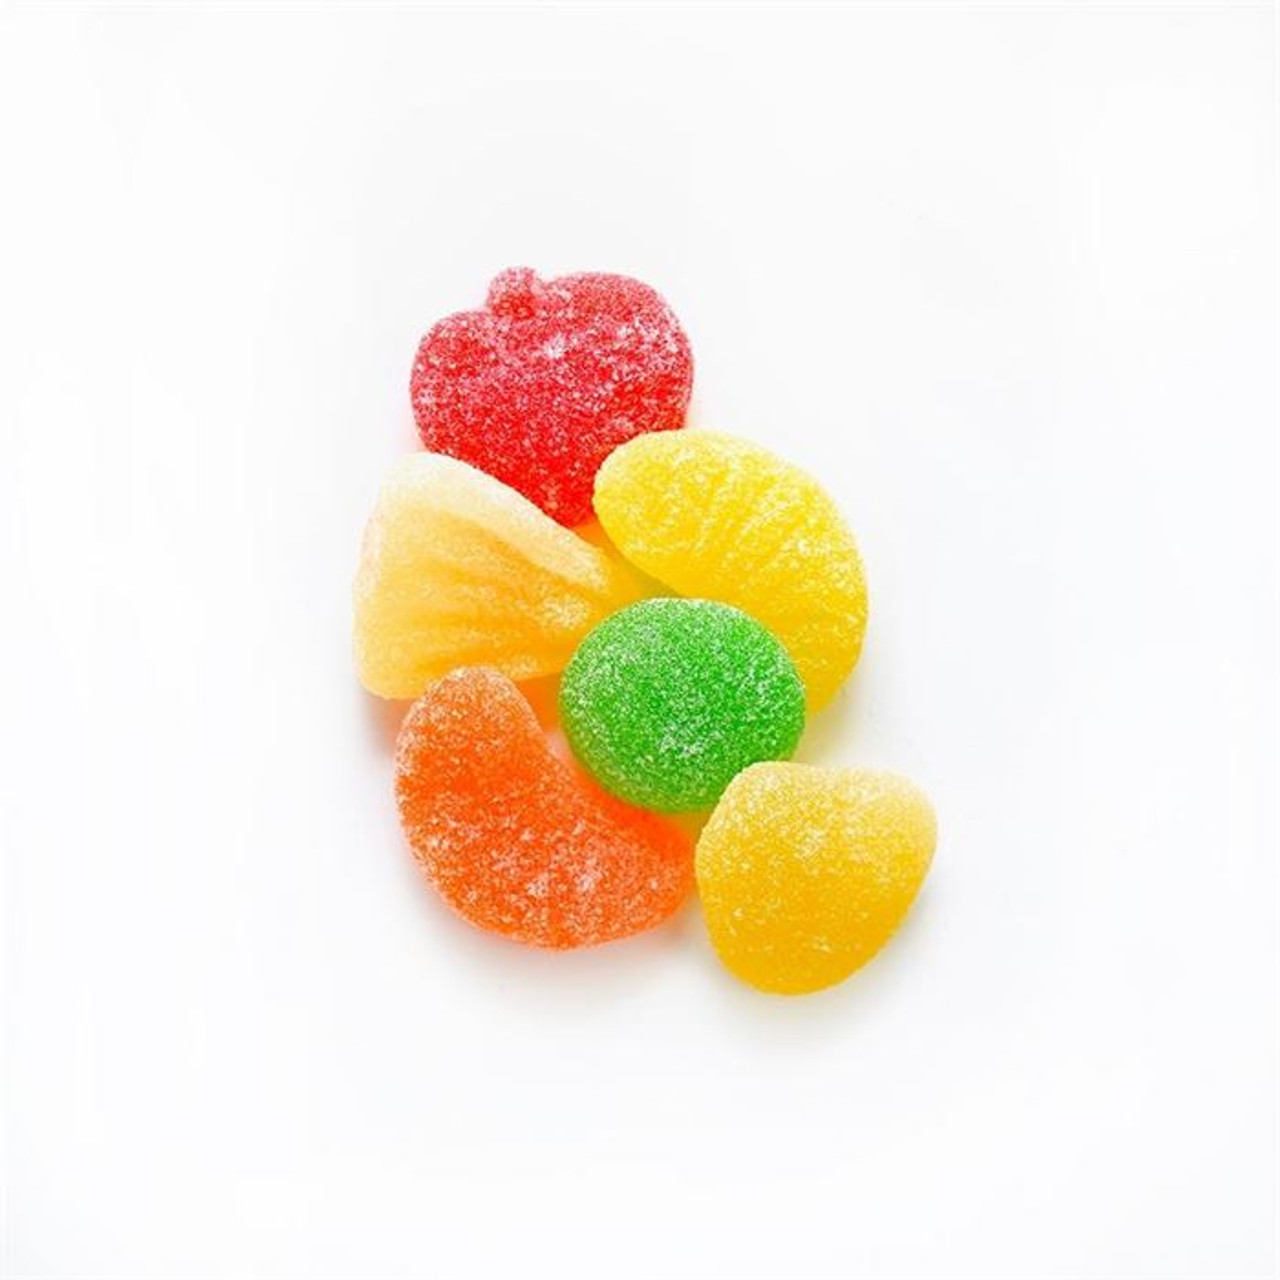 HARIBO Gummi Candy, Berries, 5 lb. Bag